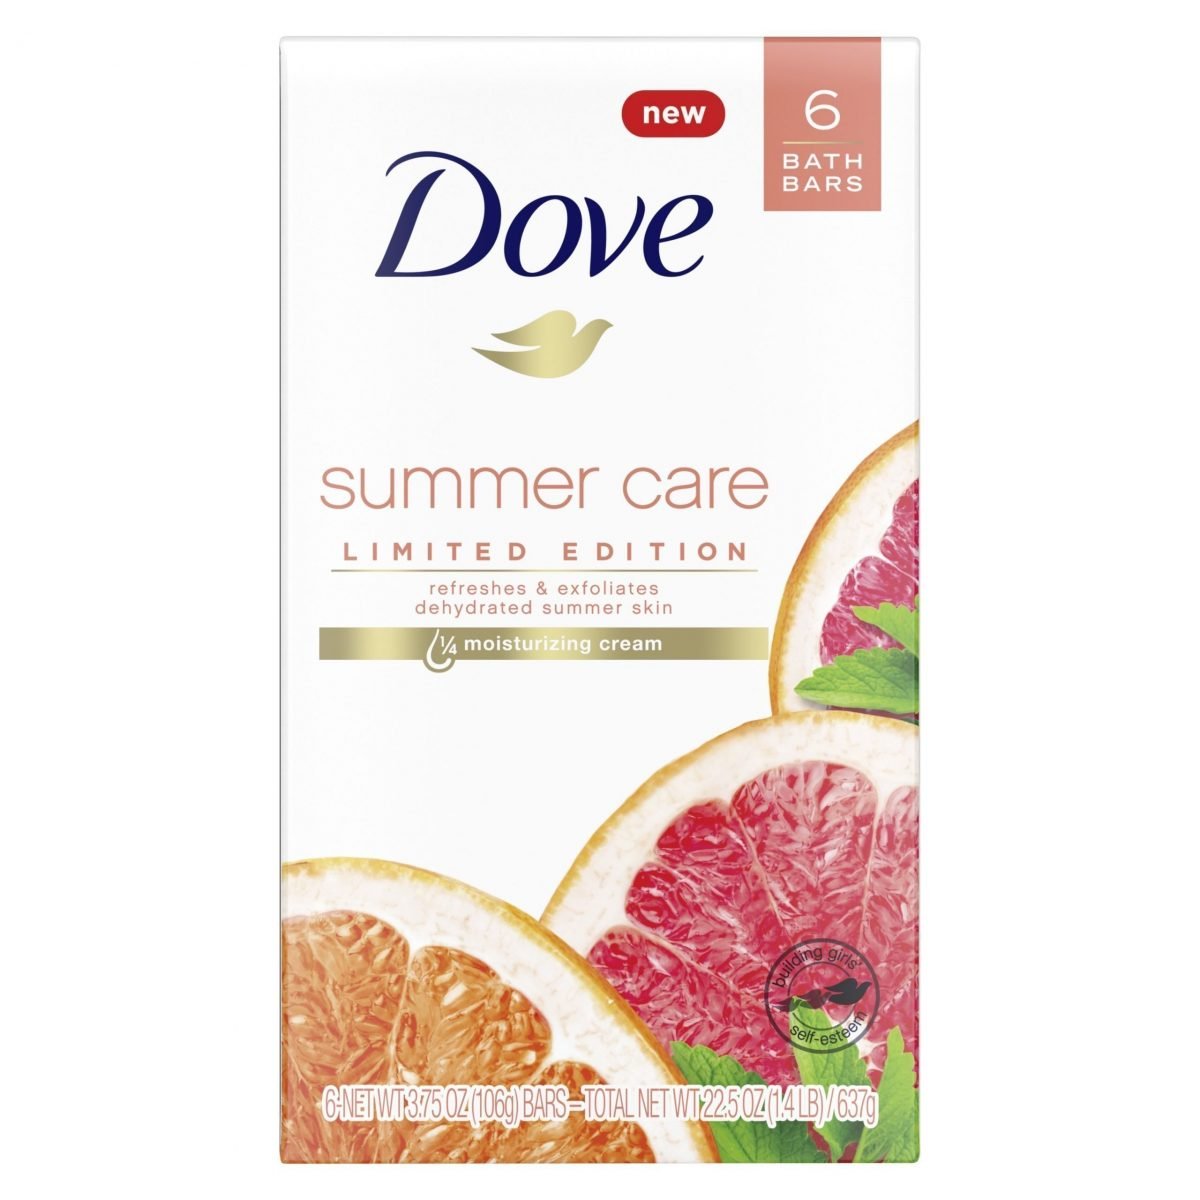 Jabón Dove Summer Care Beauty Bar 1